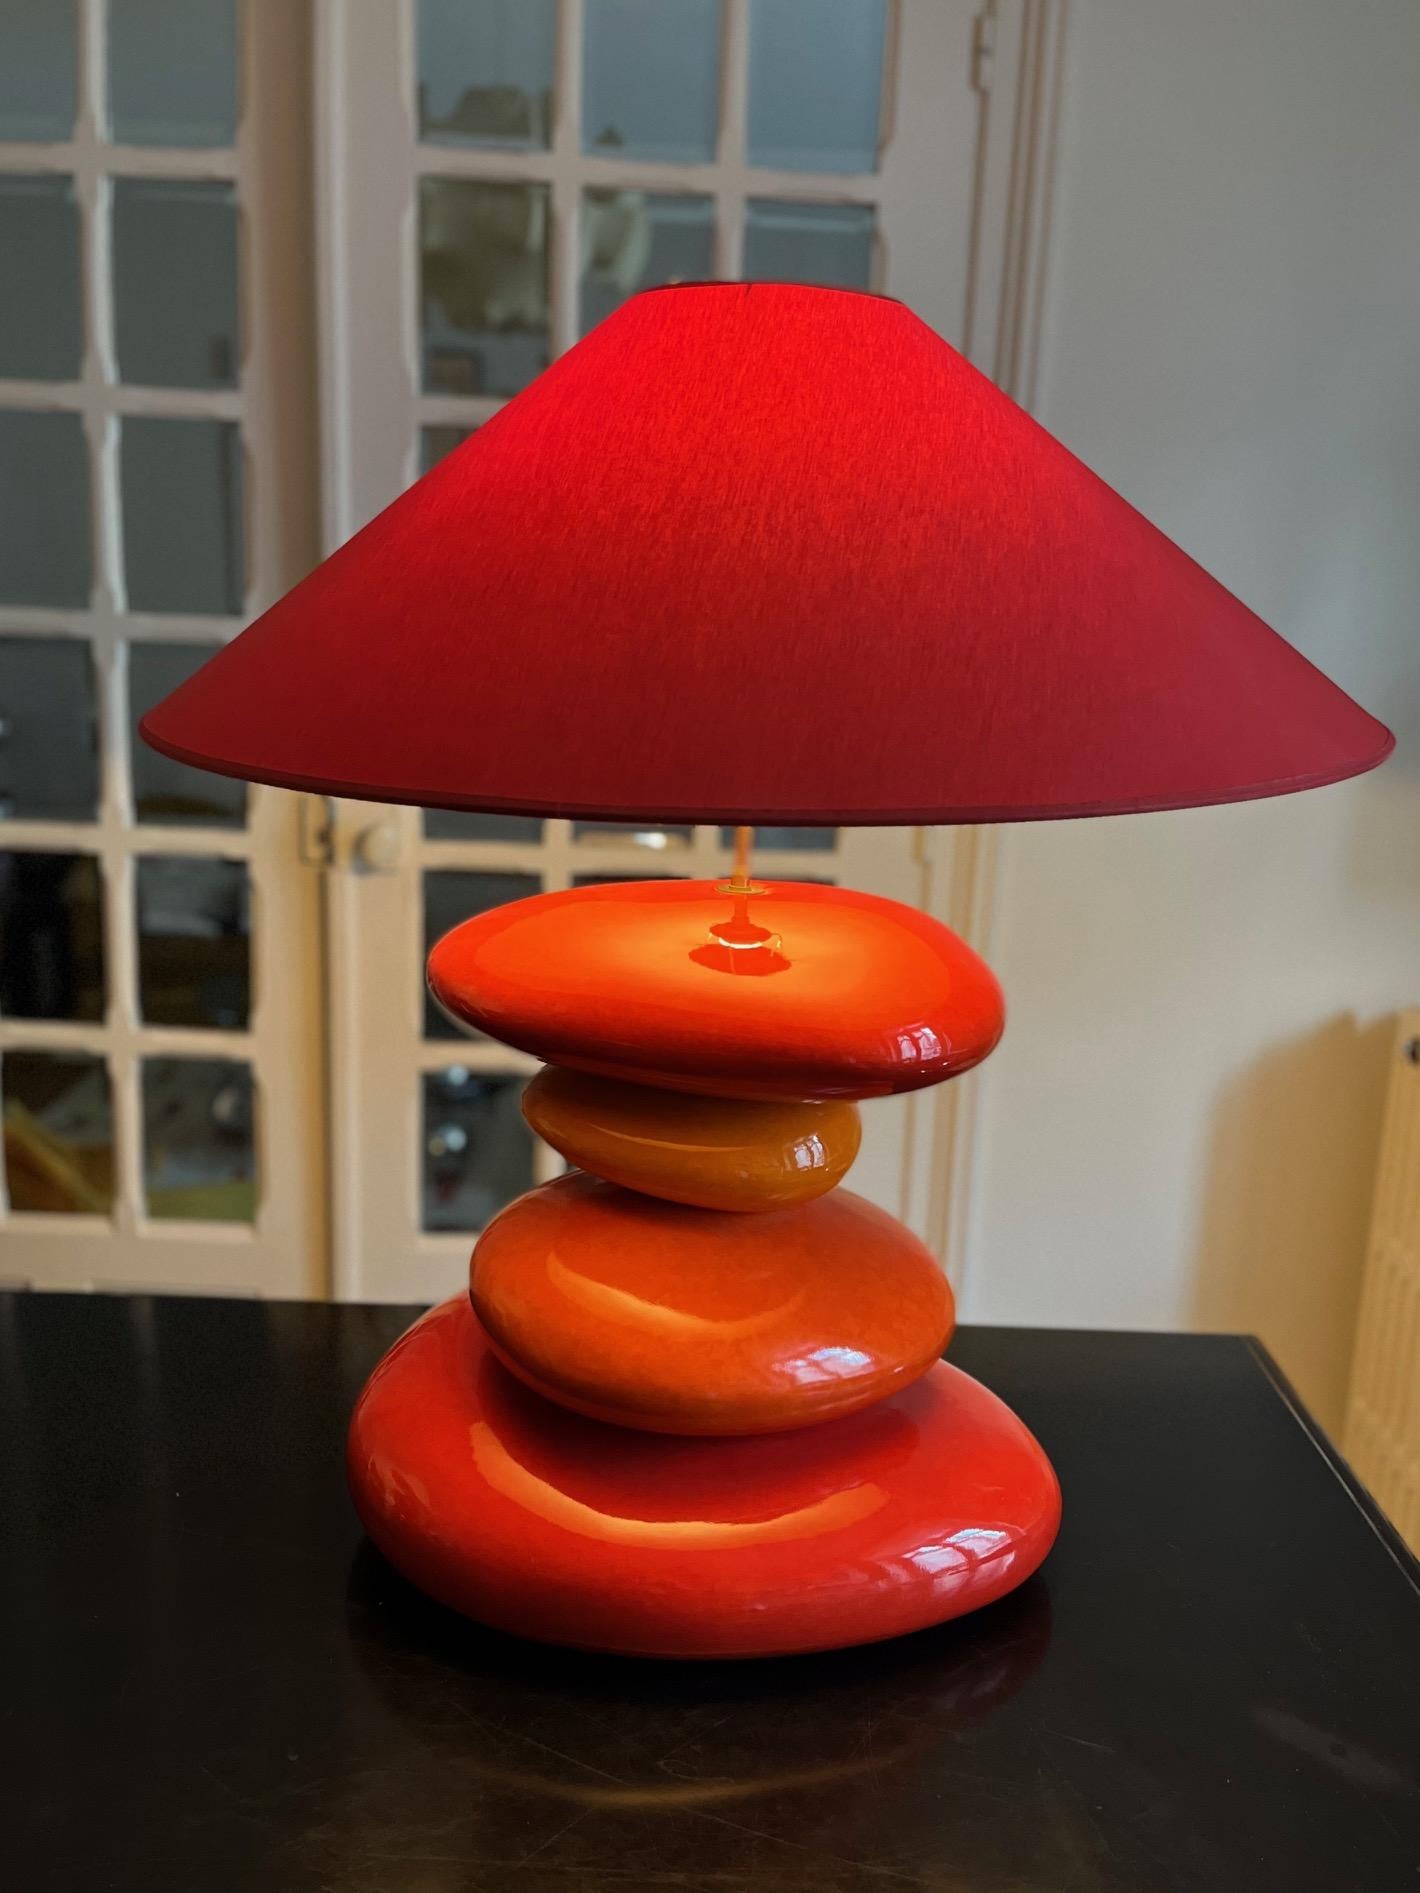 Schöne Lampe von Francois Chtain, entworfen von Francois Chtain, Originalschirm aus den 1970er Jahren
Modell Karek groß.
 